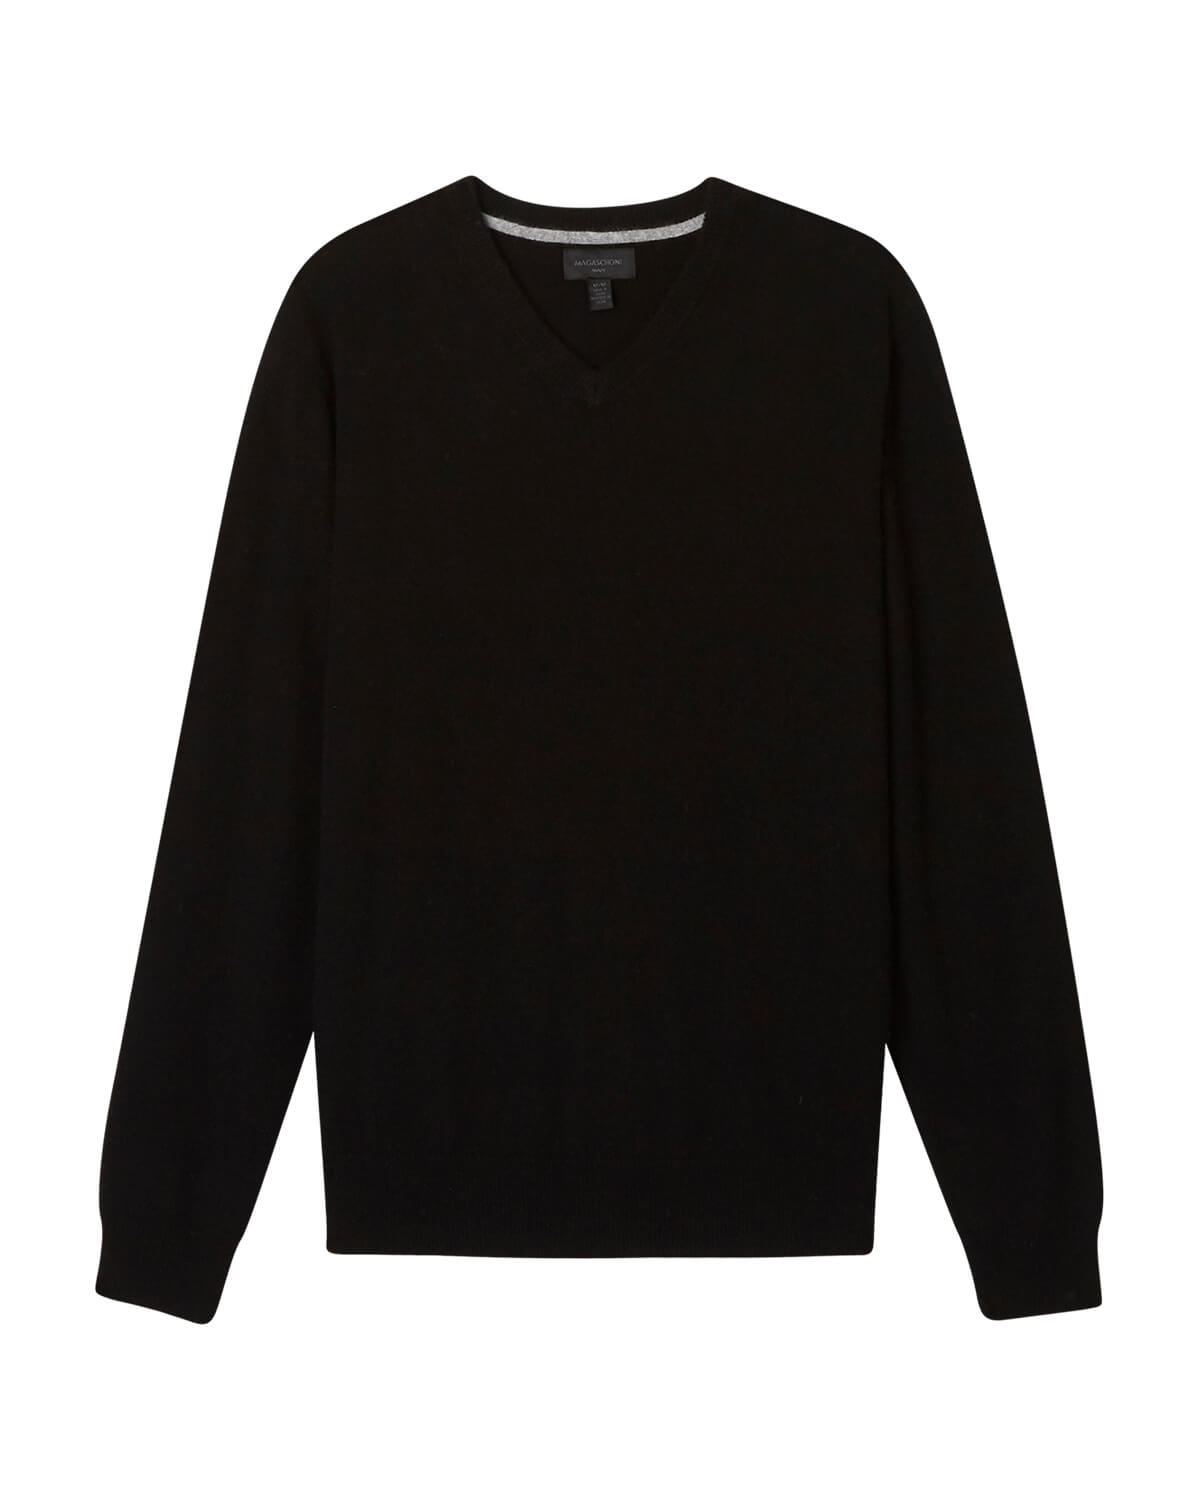 Shop Men's Cashmere V-Neck Sweater | Magaschoni Men | JANE + MERCER